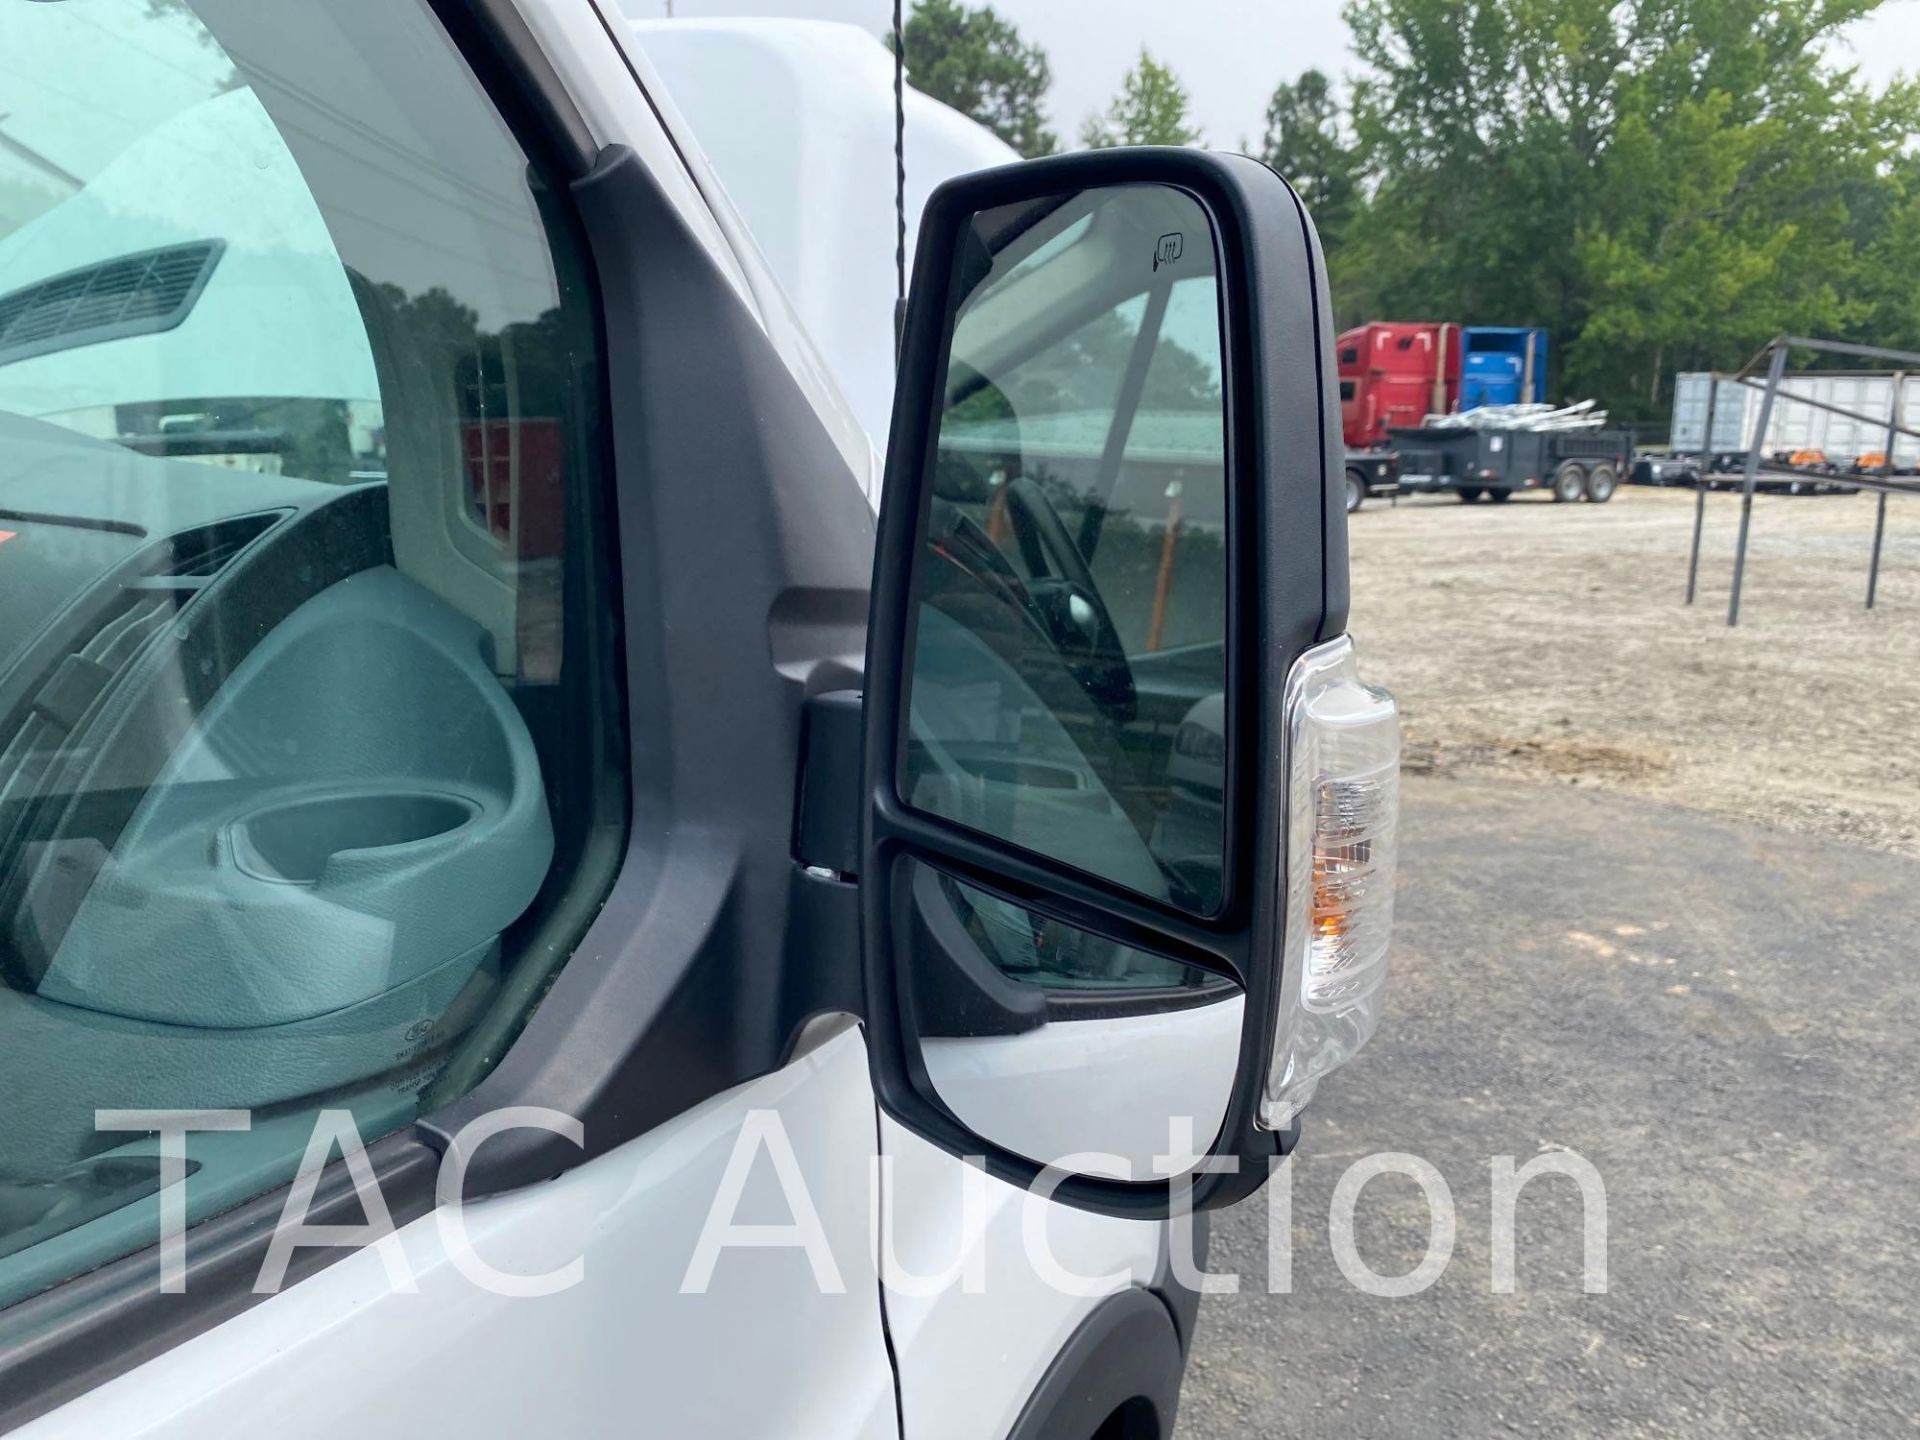 2019 Ford Transit 150 Cargo Van - Image 36 of 52